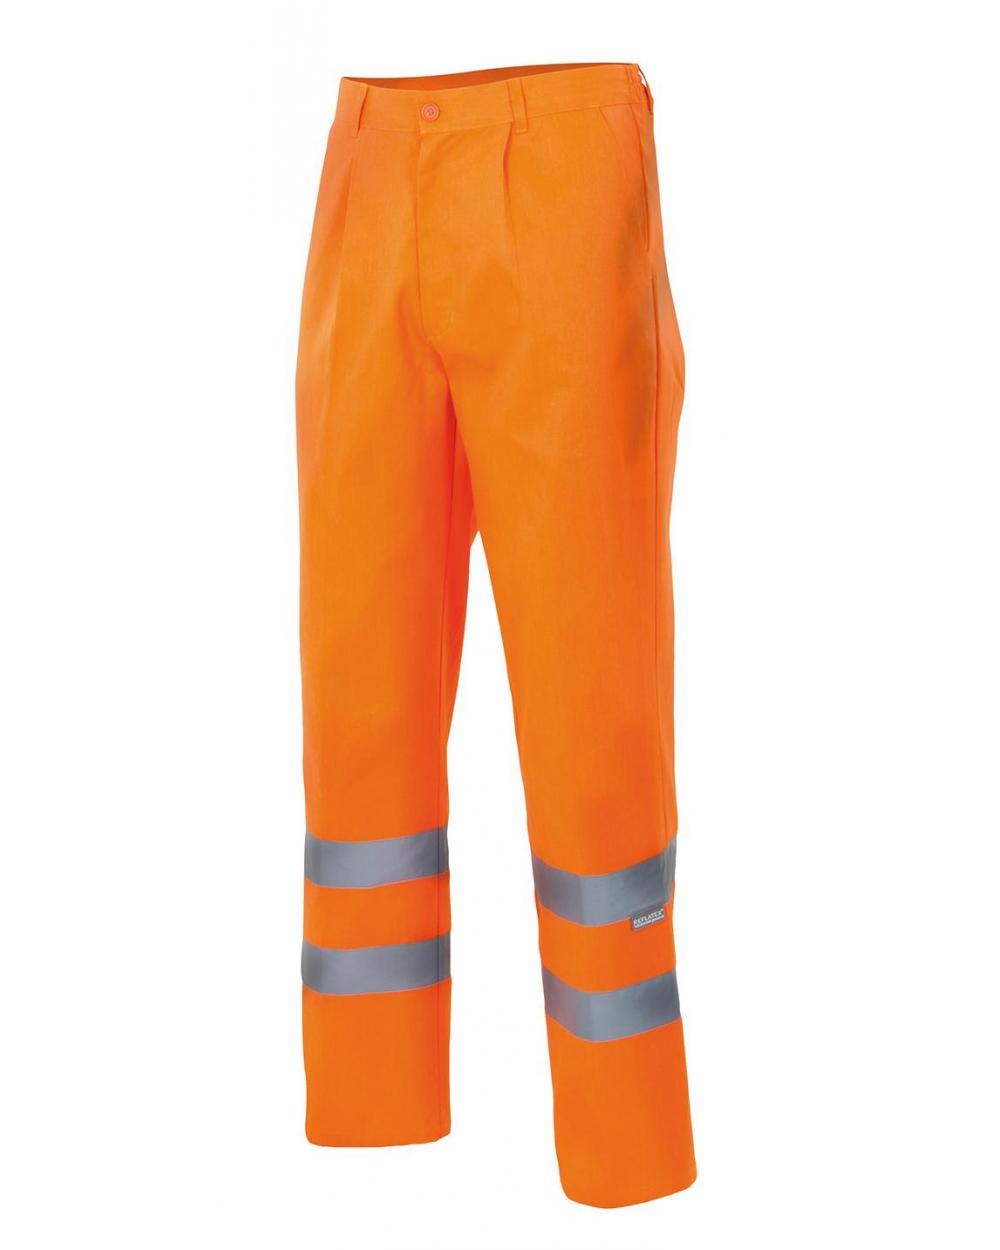 Comprar Pantalón multibolsillos alta visibilidad (tallas grandes) serie 160 online barato Naranja Fluor